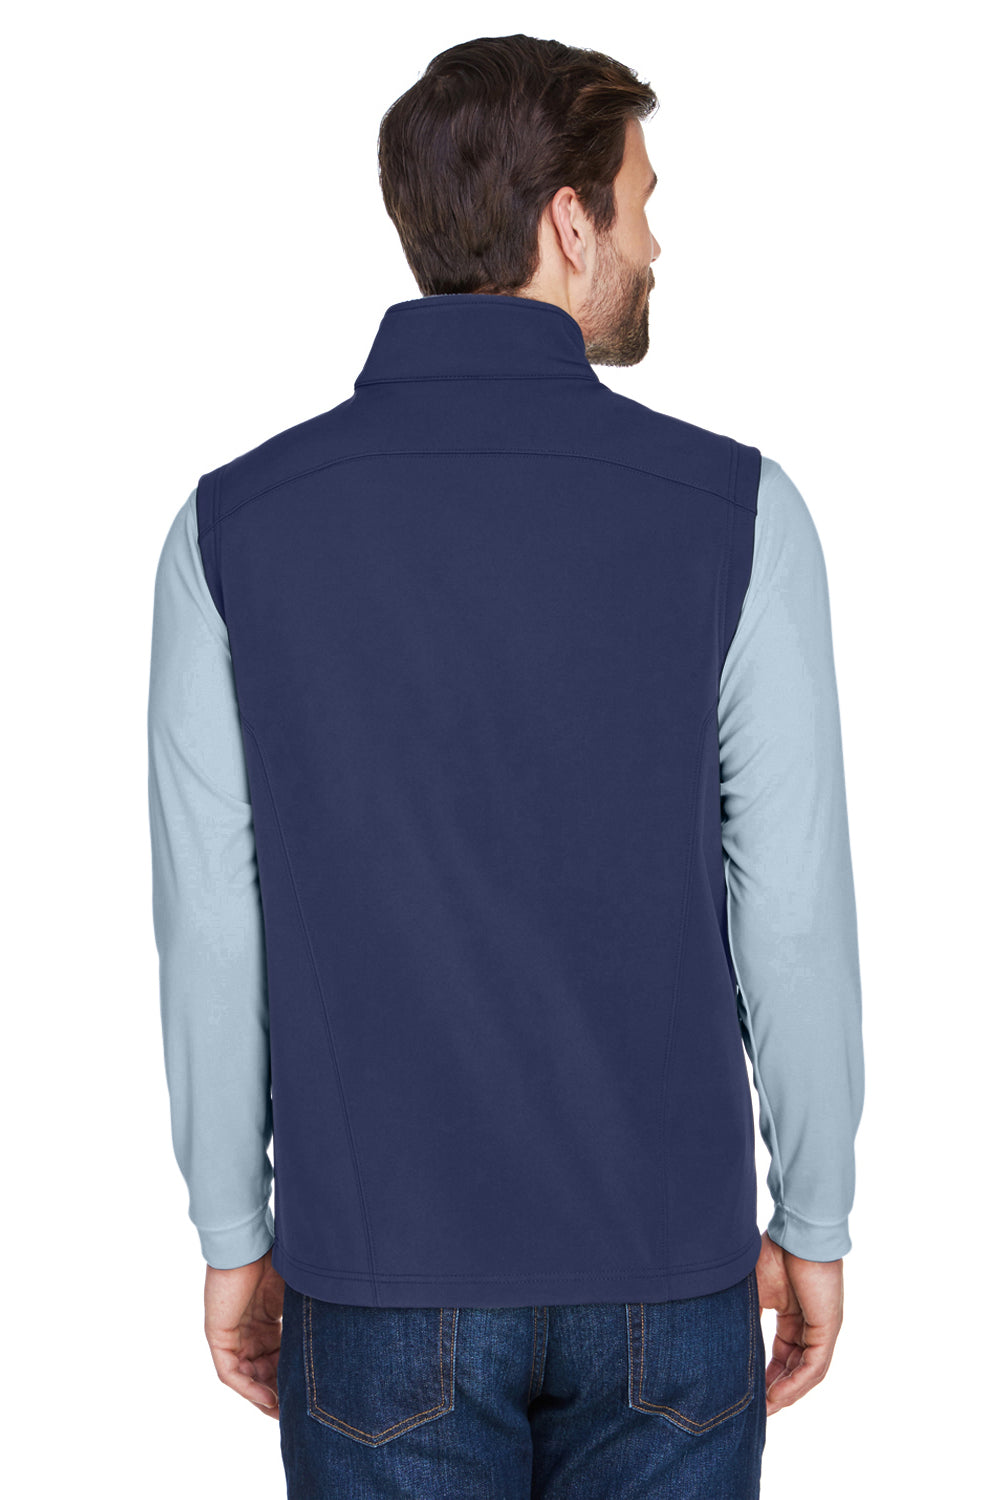 Core 365 CE701 Mens Cruise Water Resistant Full Zip Fleece Vest Navy Blue Back